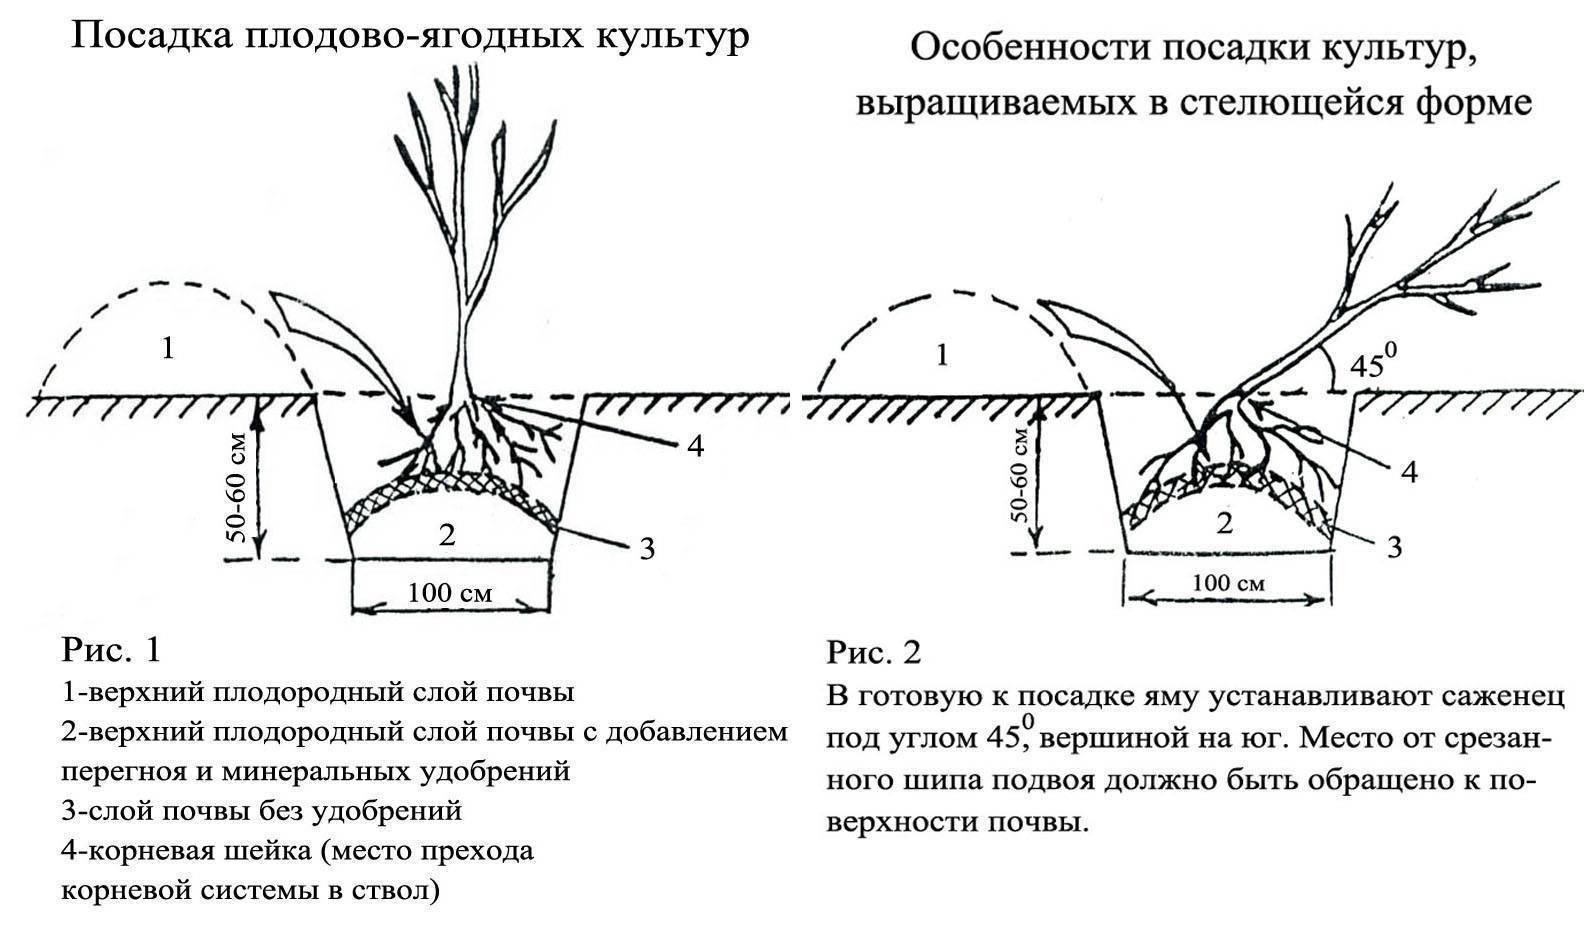 Хризантема: как и когда сеять на рассаду, ухаживать, высаживать в открытый грунт